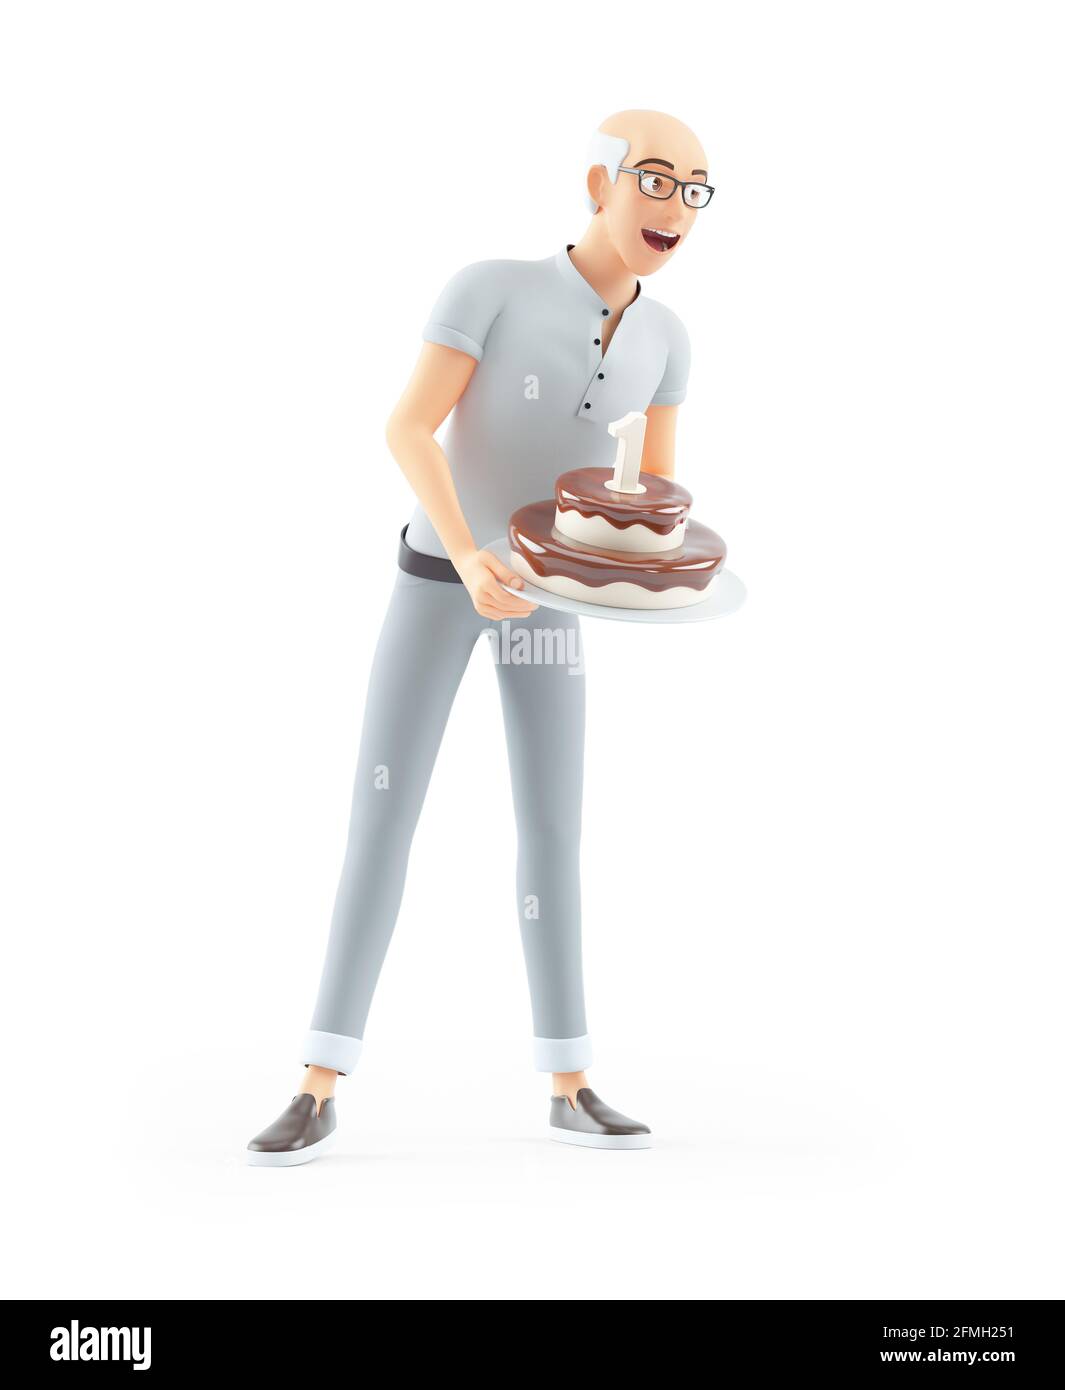 3d senior man holding birthday cake, illustration isolated on white background Stock Photo